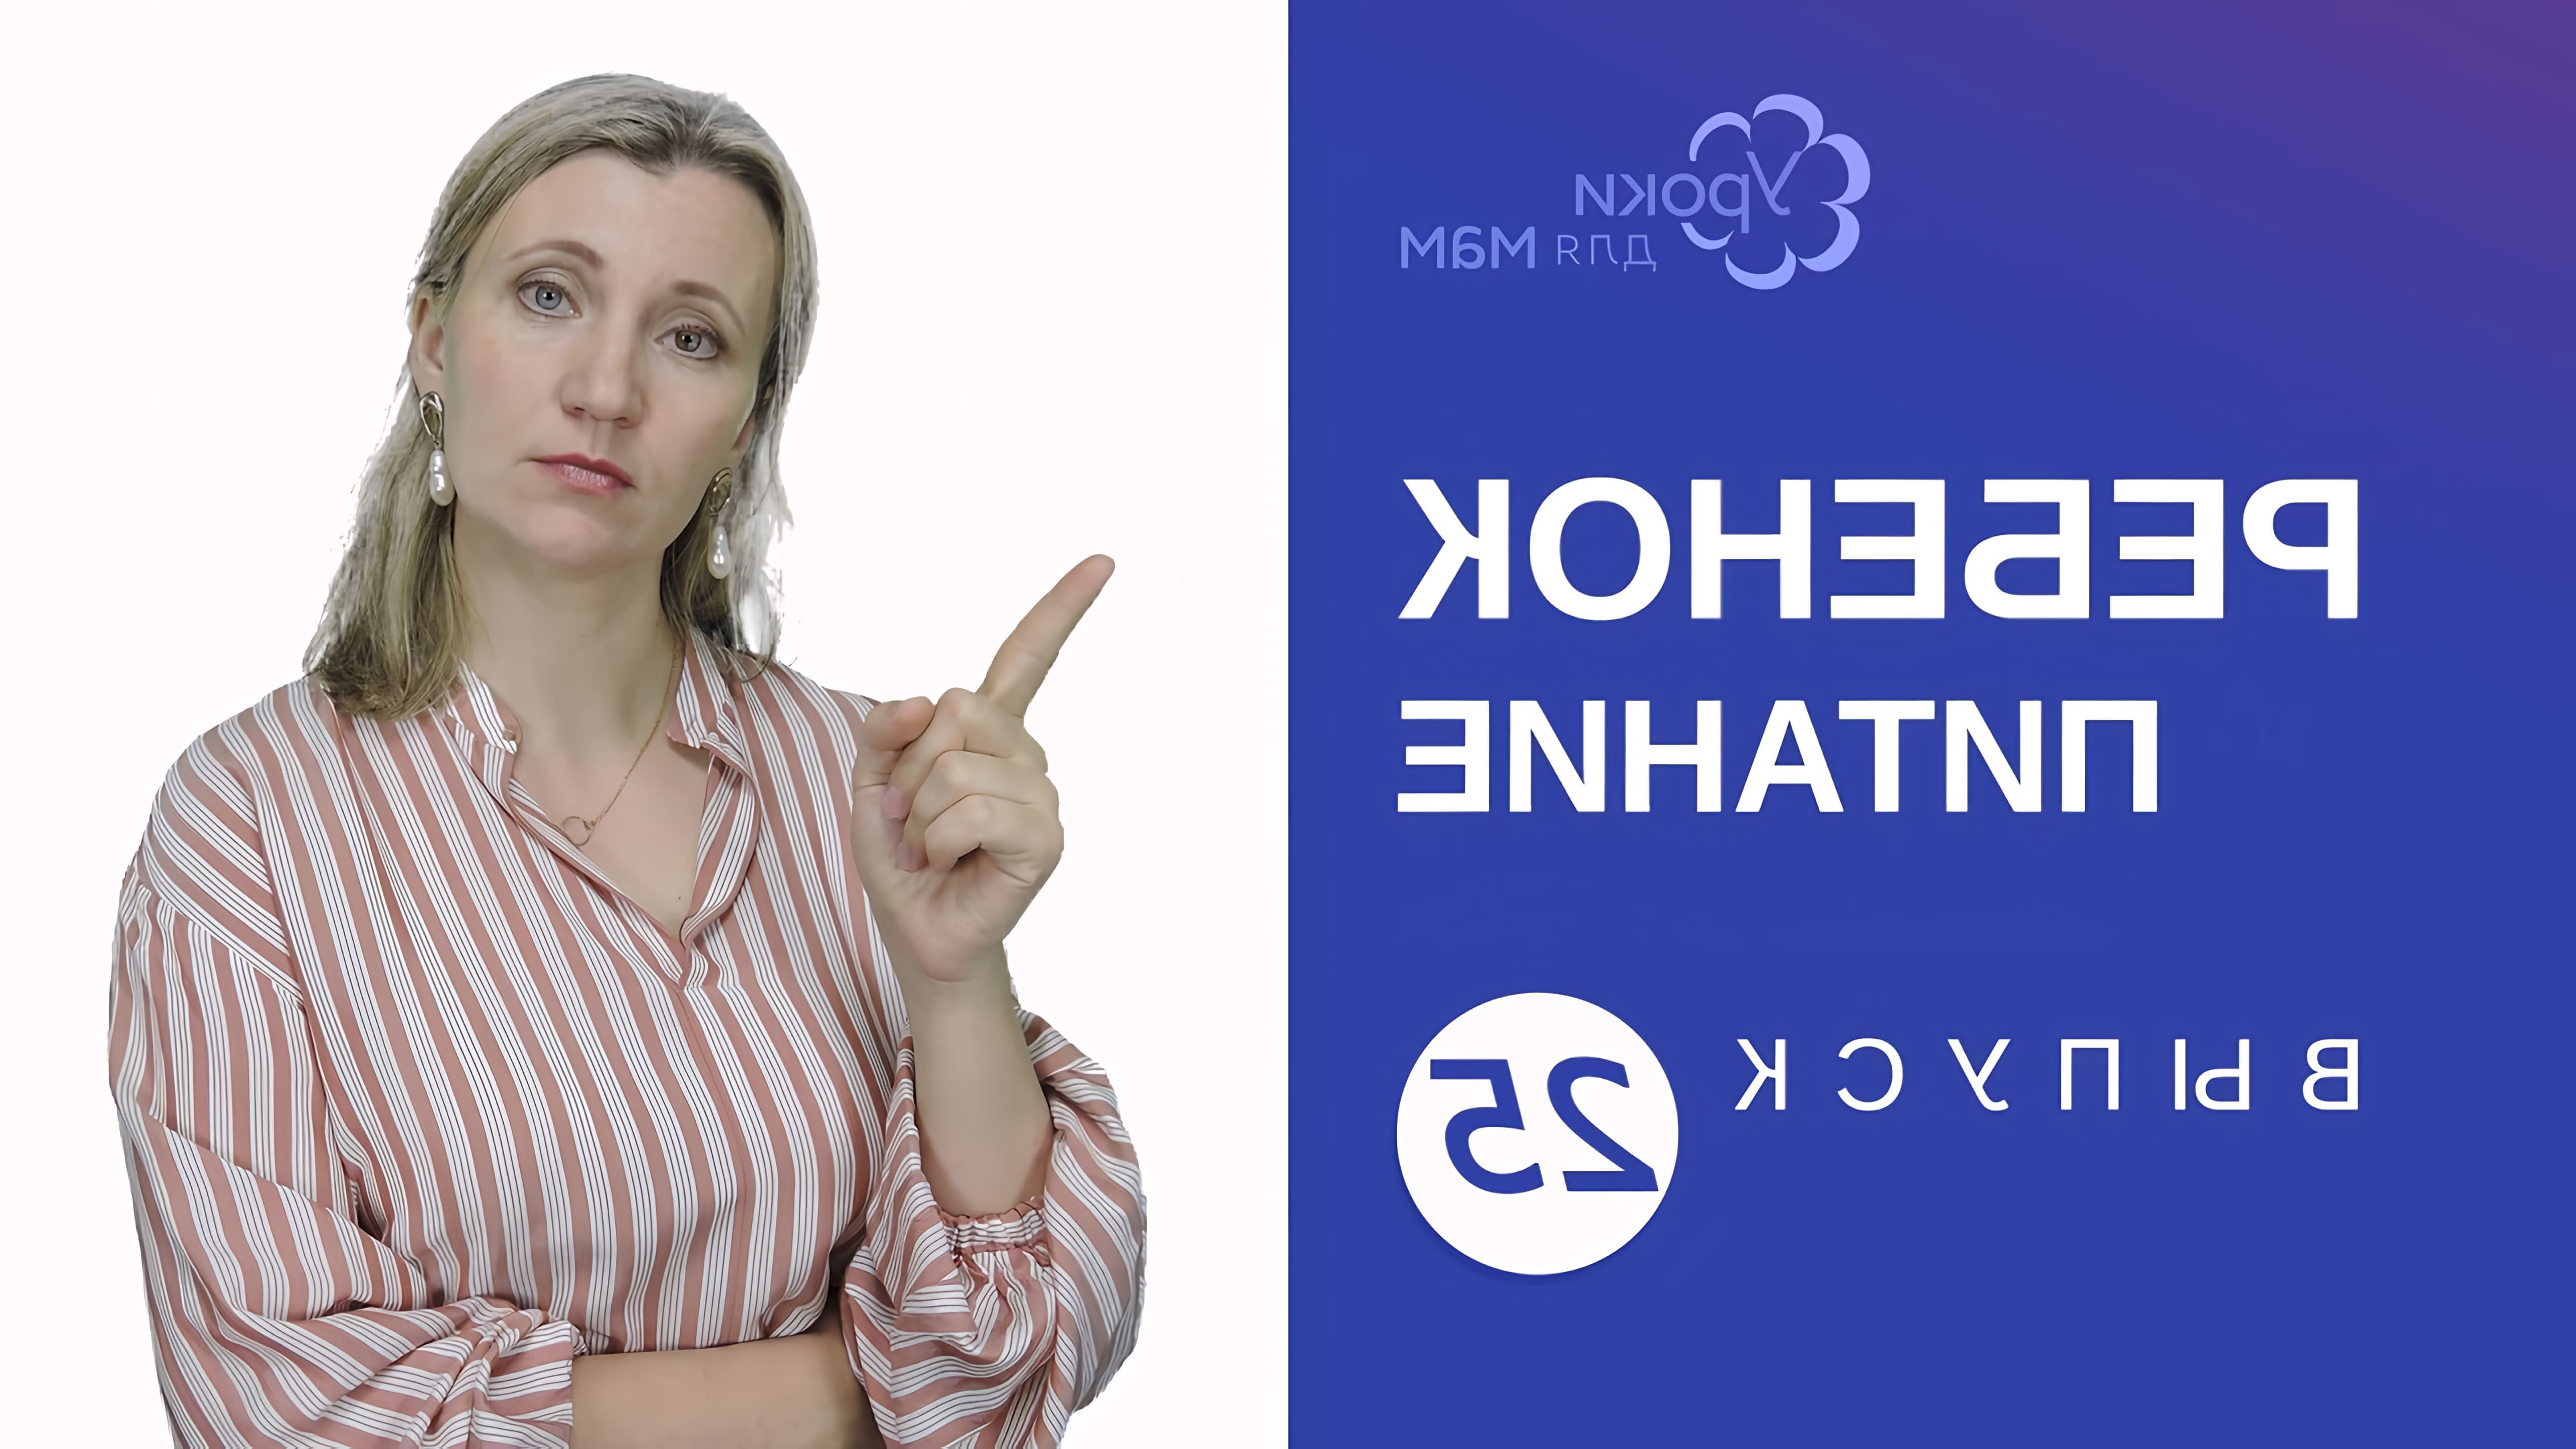 В данном видео Людмила Шарова, консультант по прикорму и грудному вскармливанию, обсуждает проблему плохого питания у детей в возрасте 8-10 месяцев